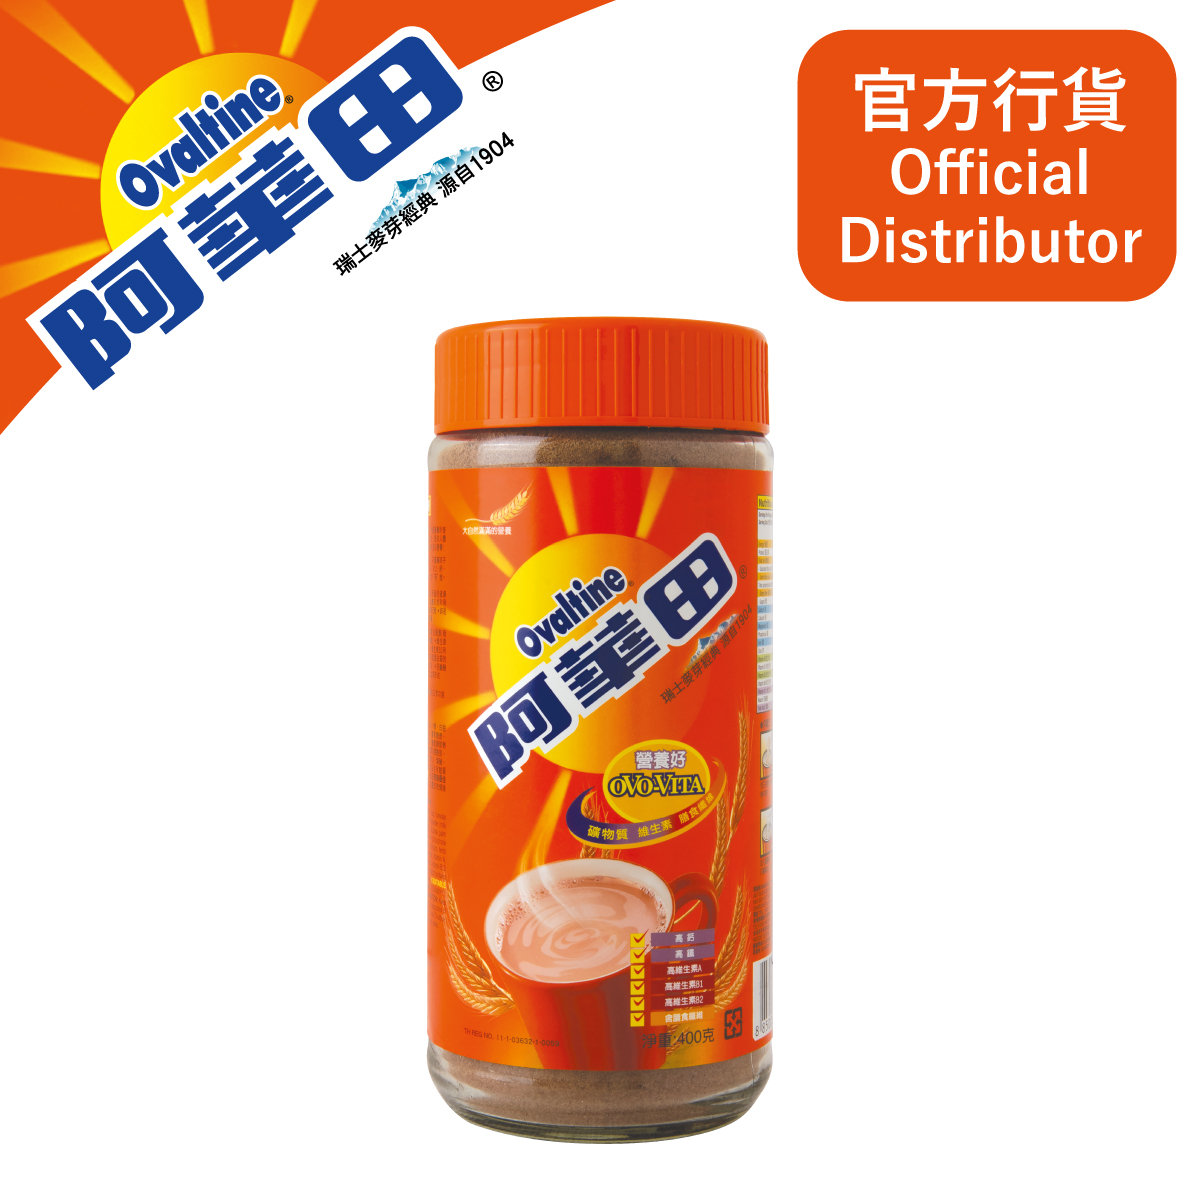 阿華田 - 營養麥芽飲品粉劑 400G 樽裝